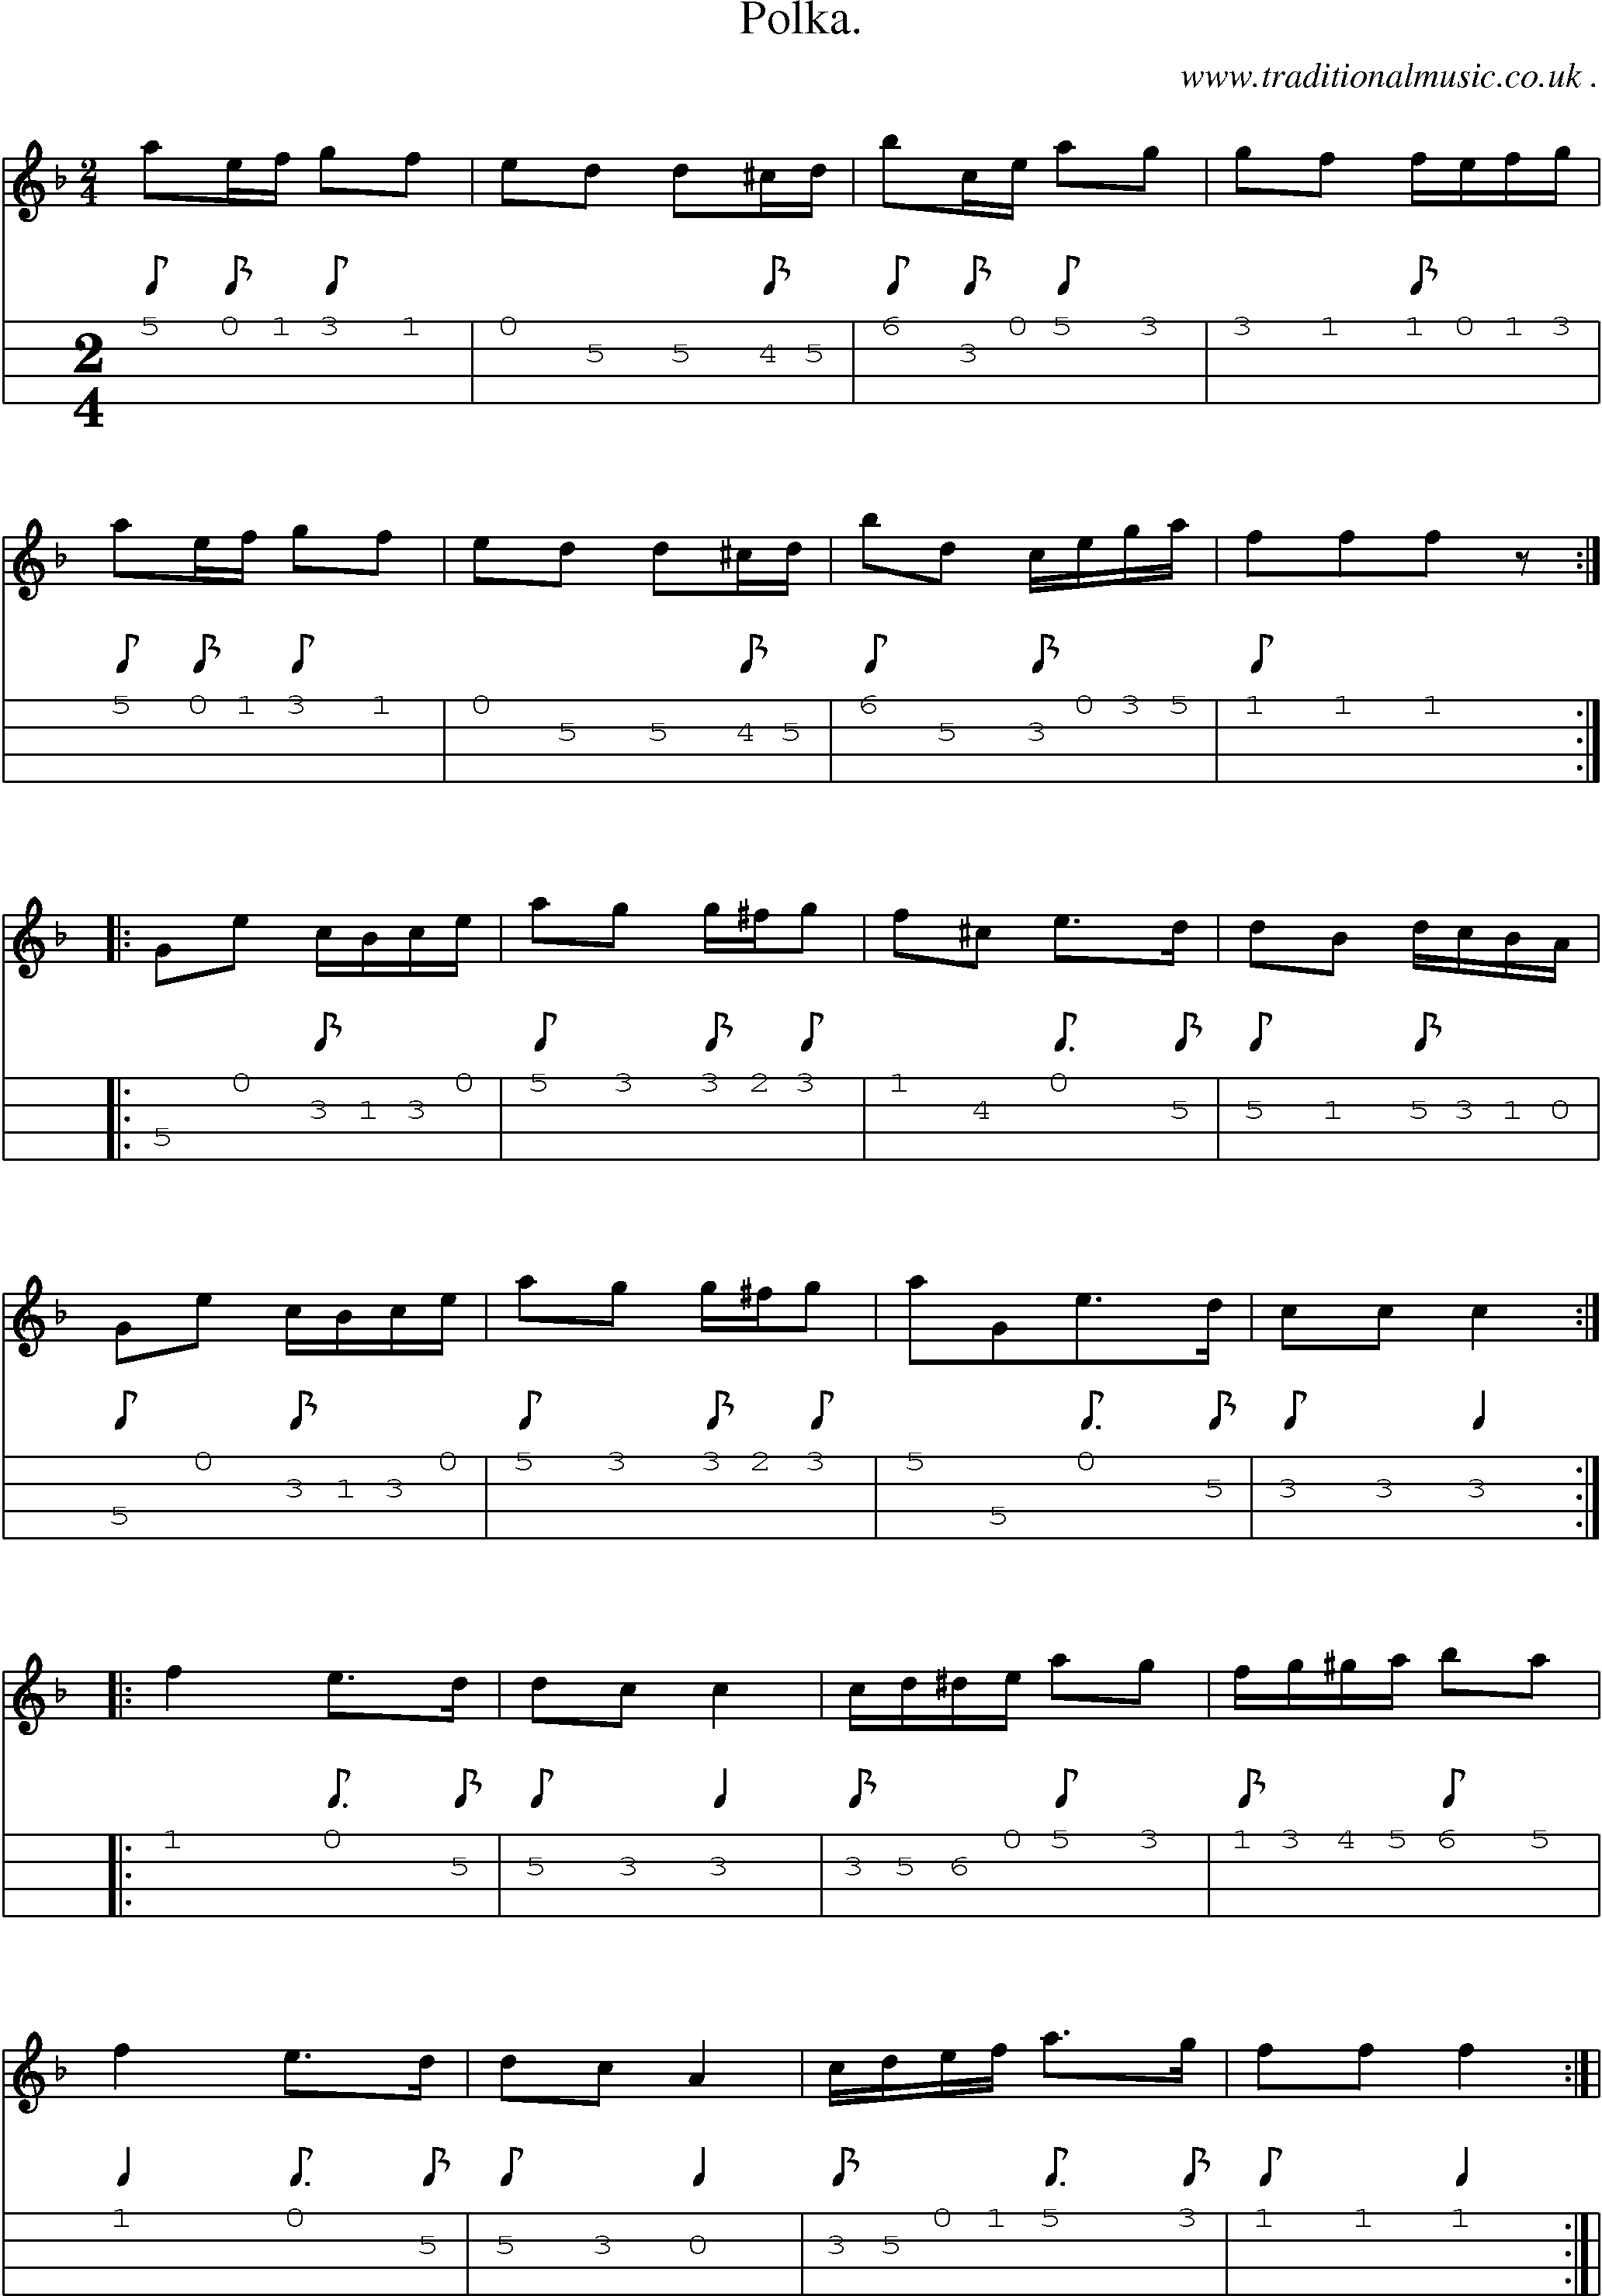 Sheet-Music and Mandolin Tabs for Polka